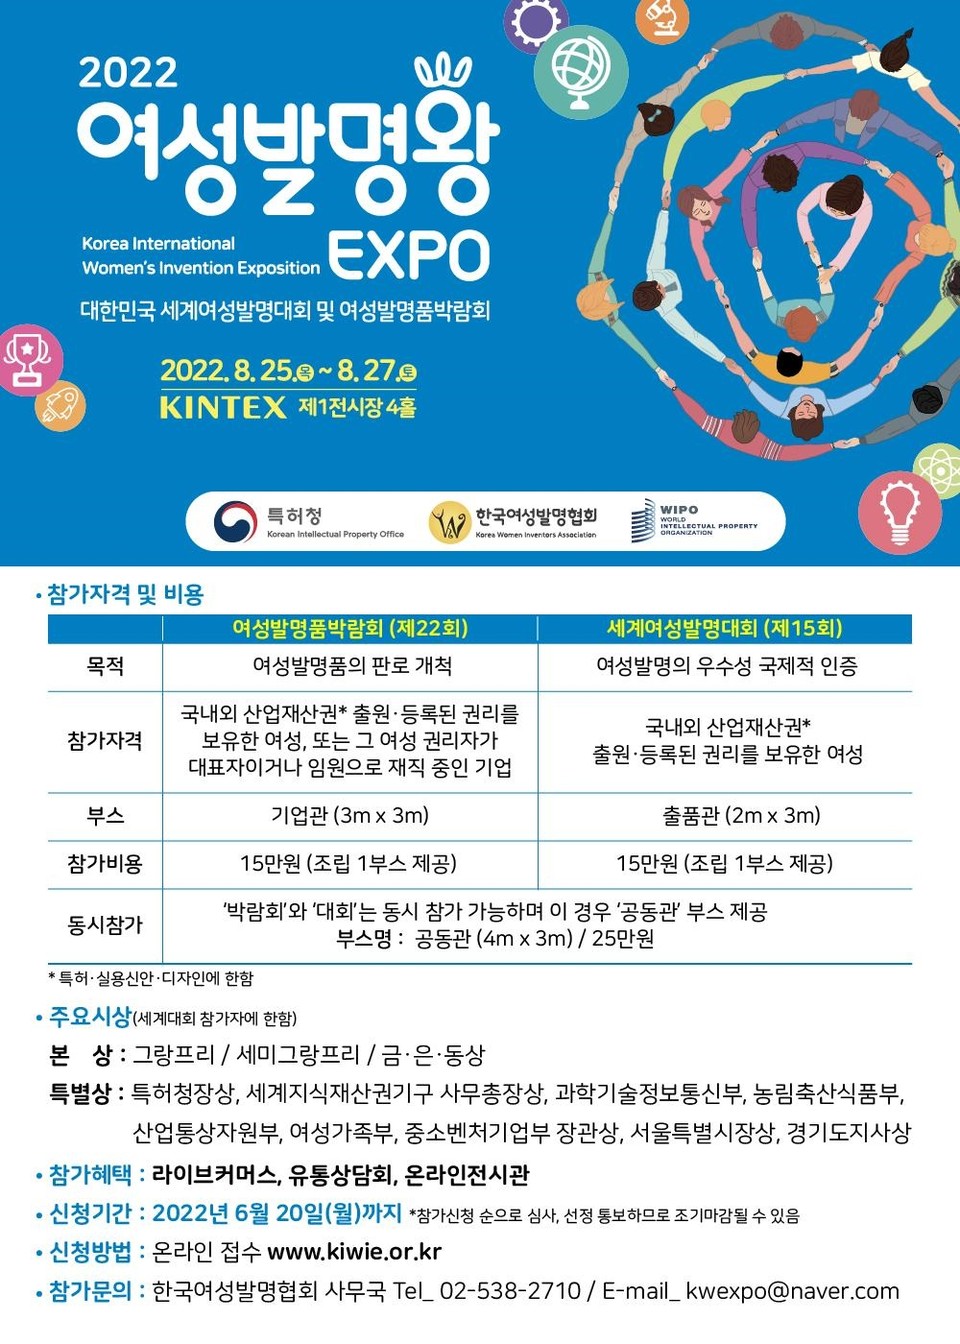 특허청(청장 김용래)이 주최하고 한국여성발명협회(회장 이인실)가 주관하는 ‘2022 여성발명왕EXPO’의 참가신청을 오는 6월 20일 접수 받는다. 사진=특허청